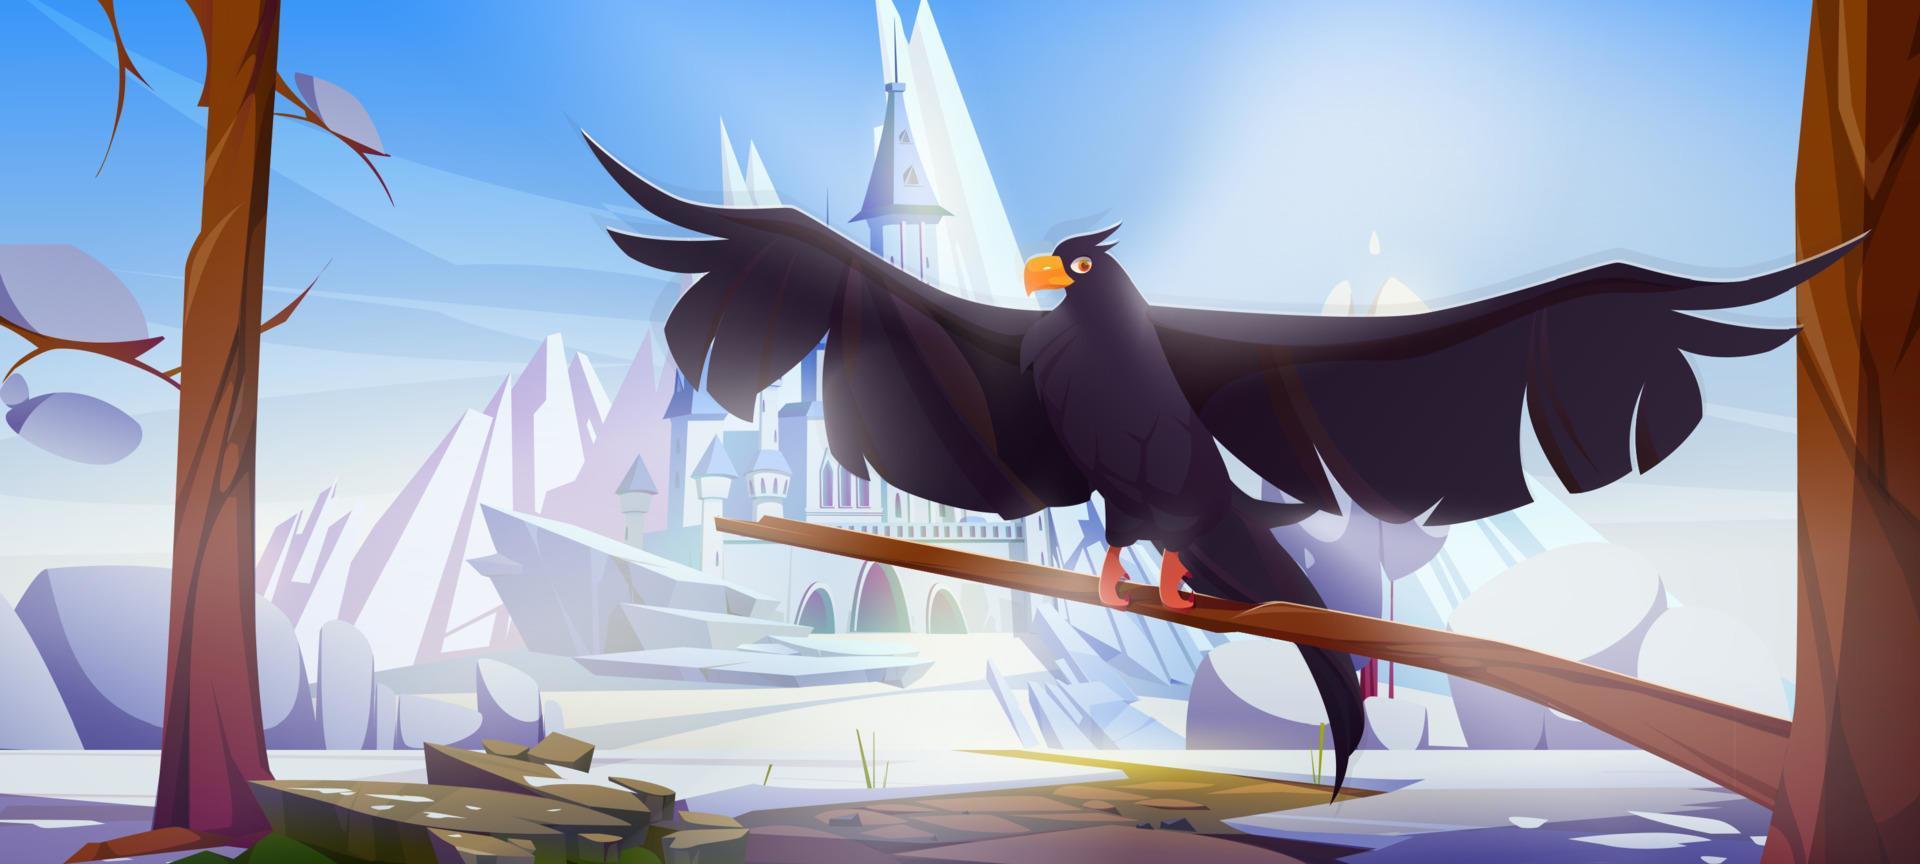 corvo preto no fundo do castelo no inverno vetor